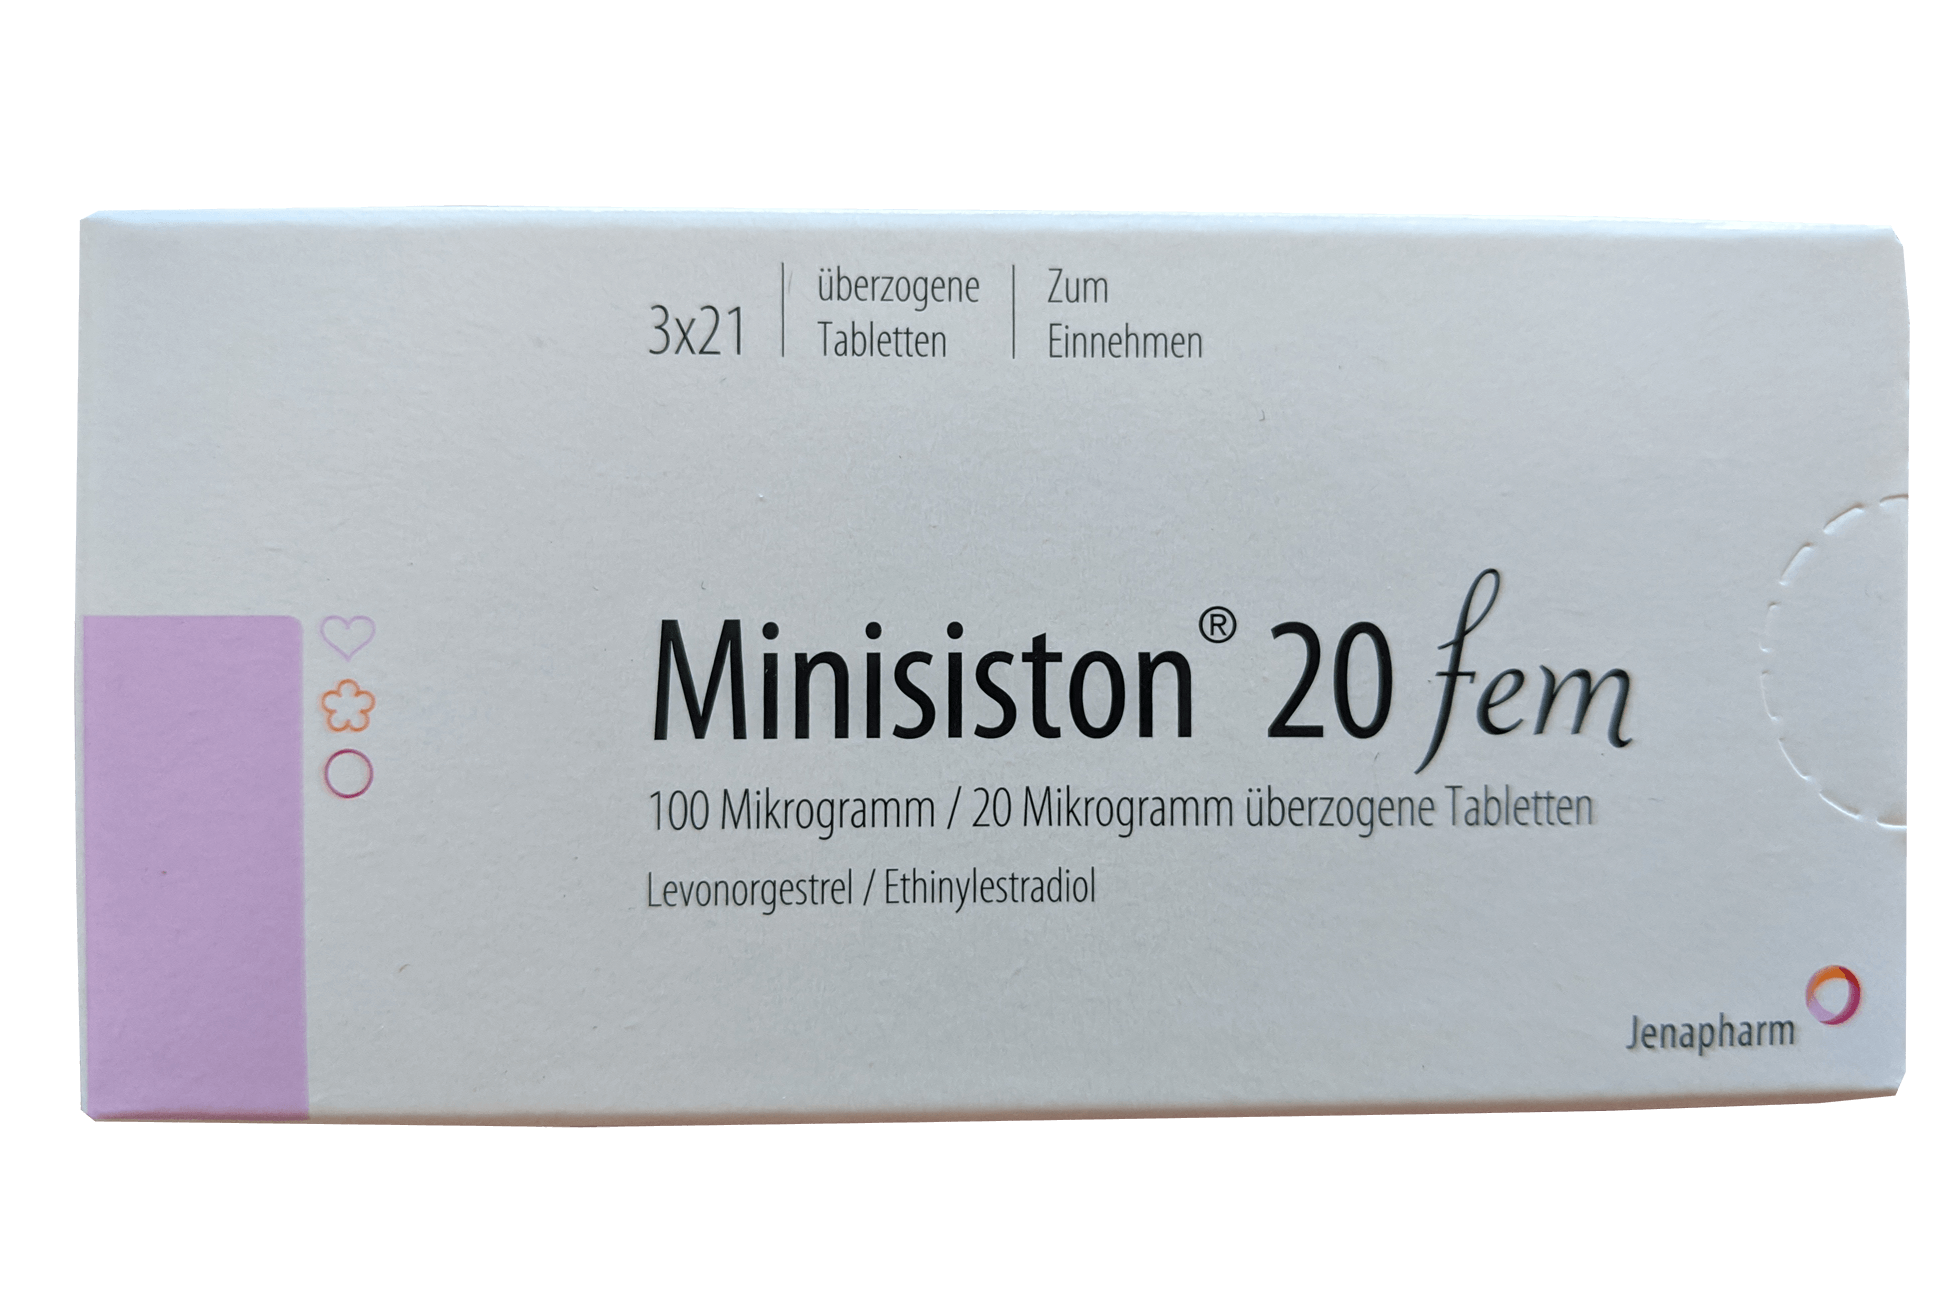 Pille Minisiston 20 fem.